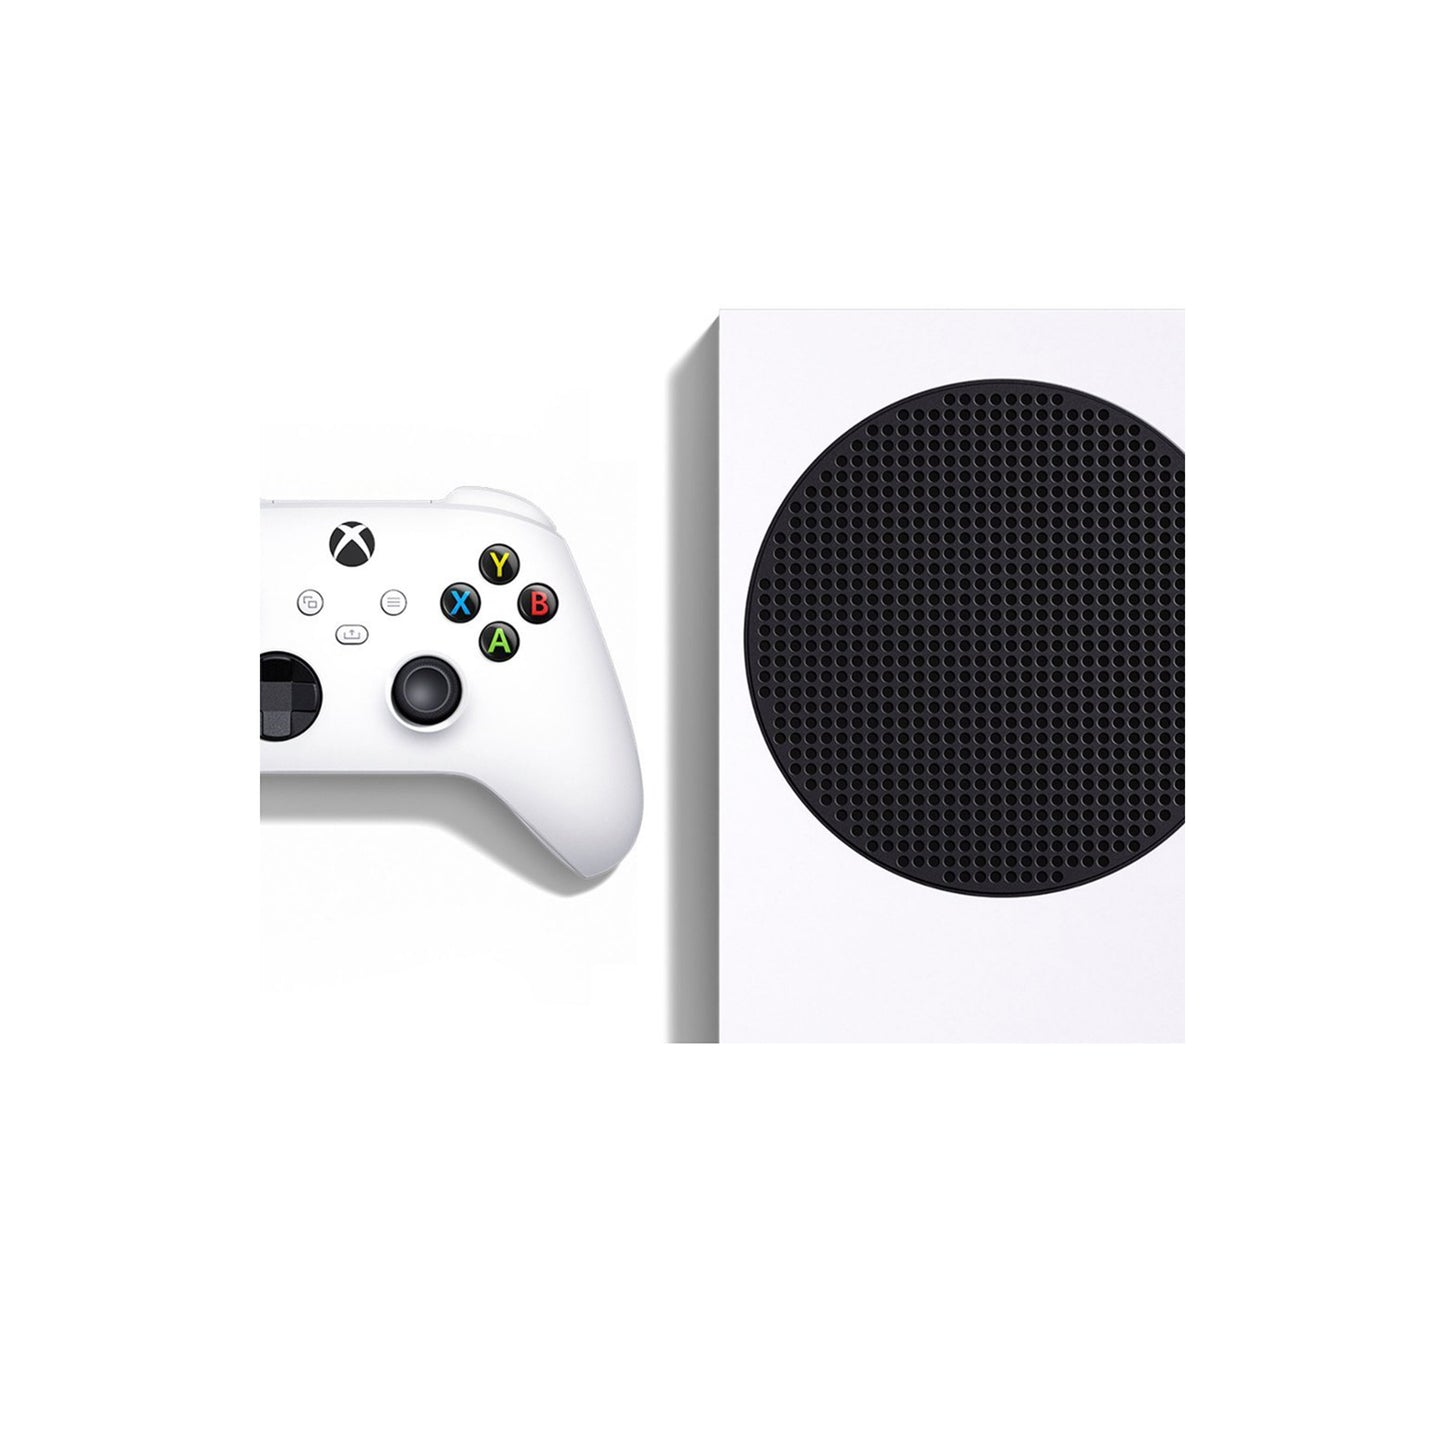 Microsoft - وحدة تحكم Xbox Series S سعة 512 جيجابايت الرقمية بالكامل مع Xbox Game Pass (ألعاب خالية من الأقراص) - أبيض 